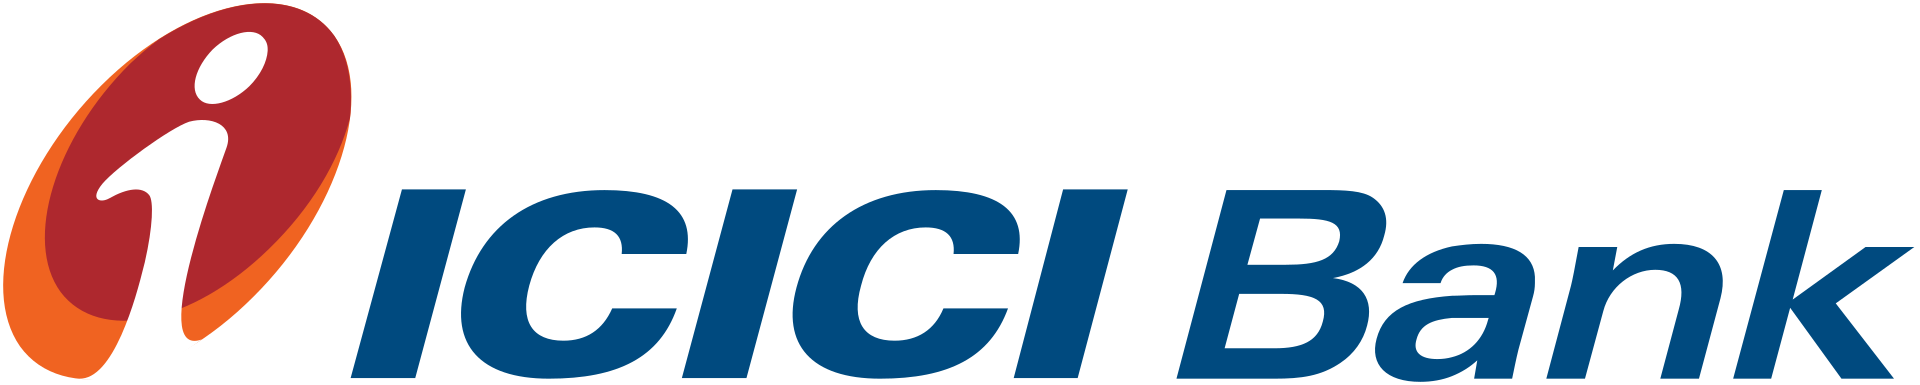 ICICI Bank - Industrial Credit and Investment Corporation of India - Индийская корпорация промышленного кредитования и инвестиций - АйСиАйСиАй Банк Евразия